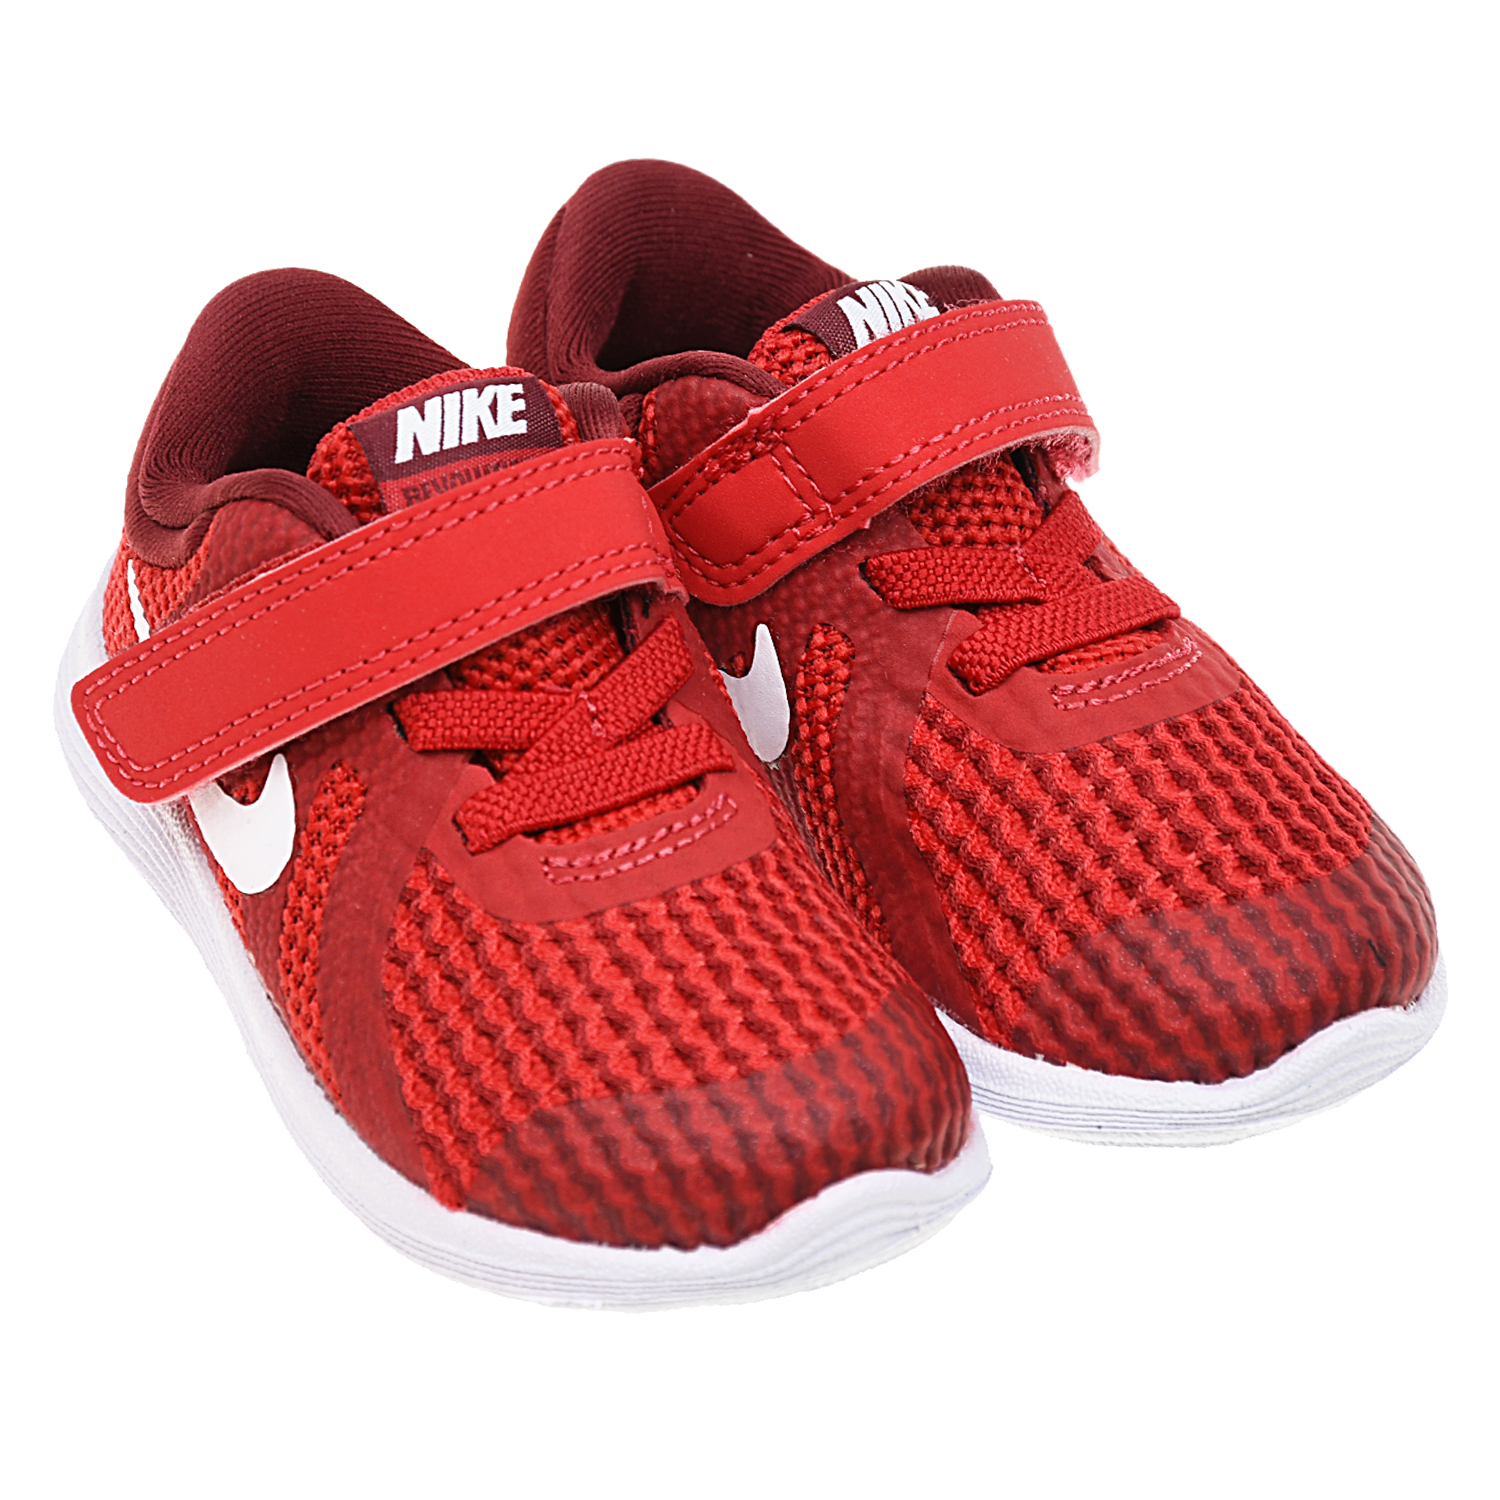 Красные кроссовки Nike Revolution 4 детские - фото 1